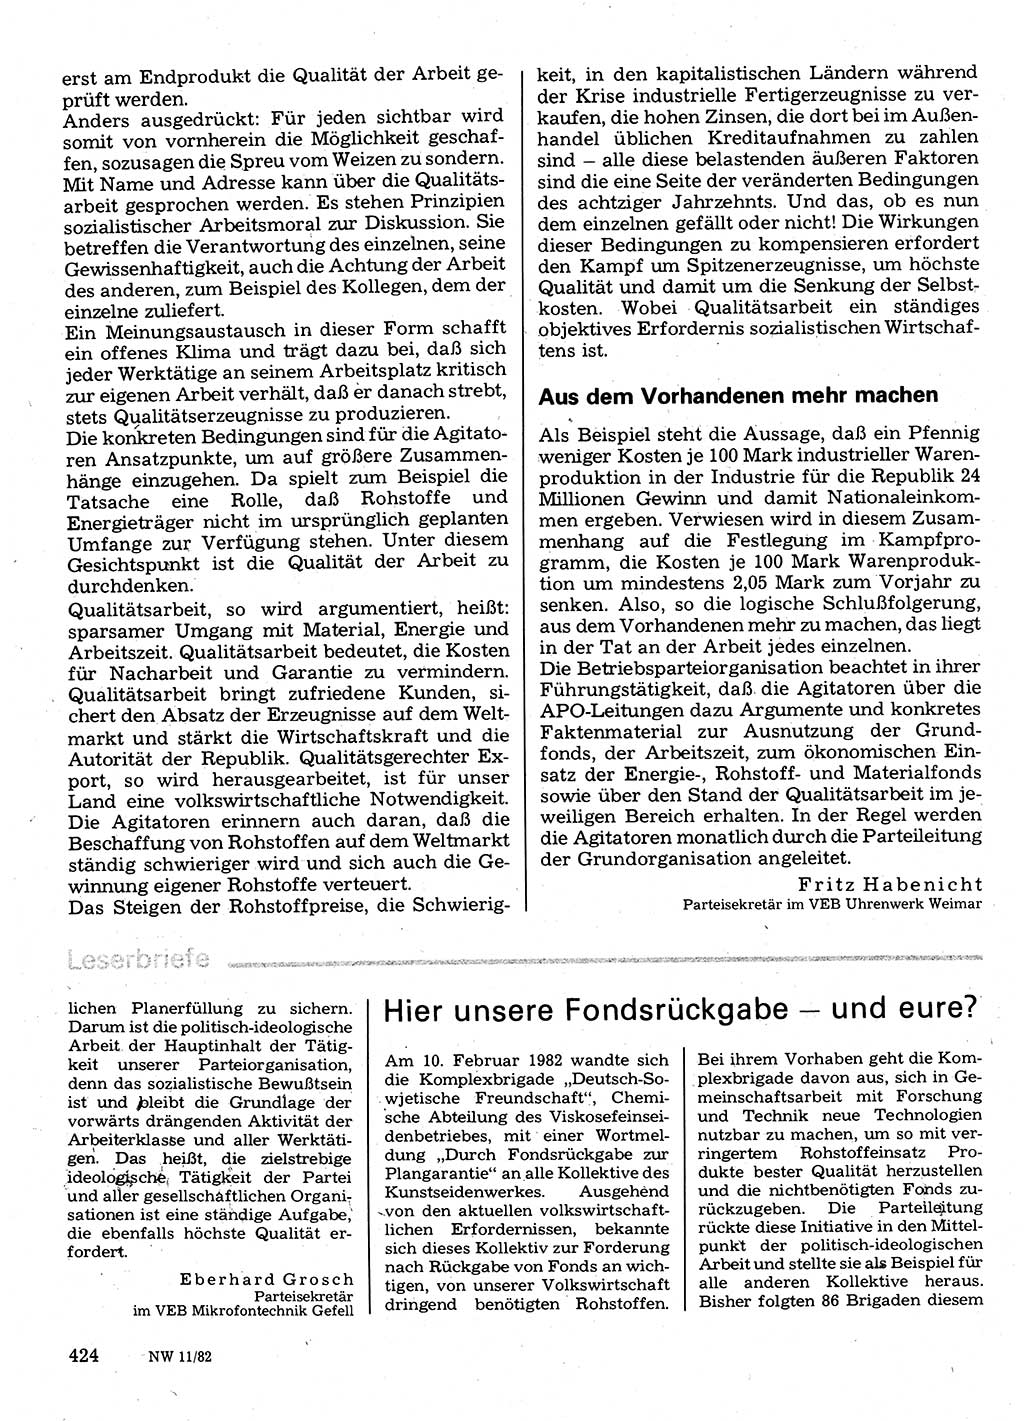 Neuer Weg (NW), Organ des Zentralkomitees (ZK) der SED (Sozialistische Einheitspartei Deutschlands) für Fragen des Parteilebens, 37. Jahrgang [Deutsche Demokratische Republik (DDR)] 1982, Seite 424 (NW ZK SED DDR 1982, S. 424)